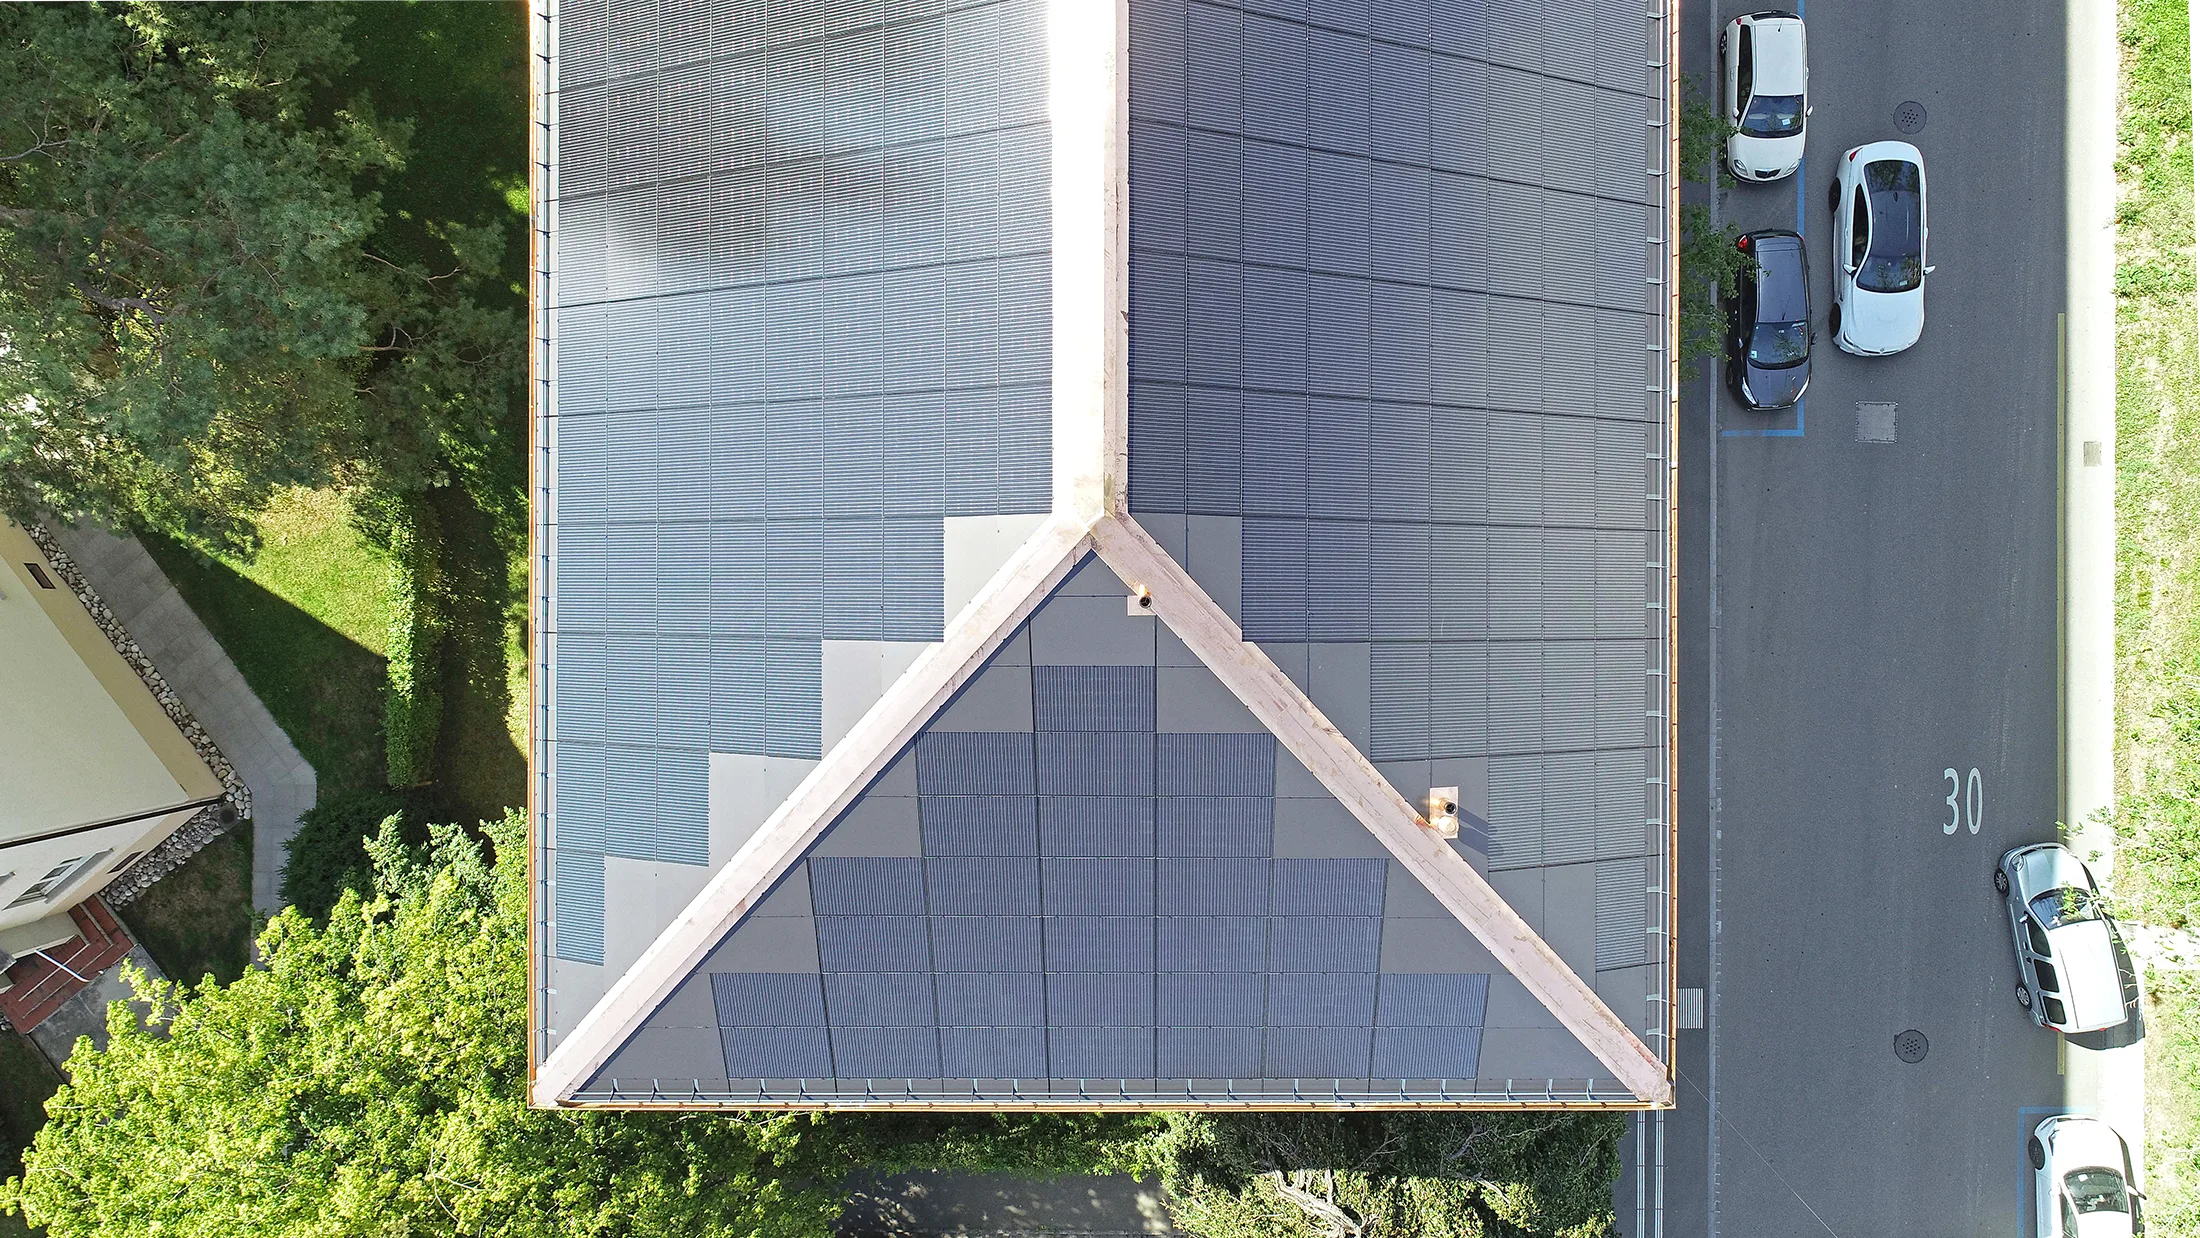 Fertig gedecktes Dach mit Indach-PV Anlage und Blindmodulen